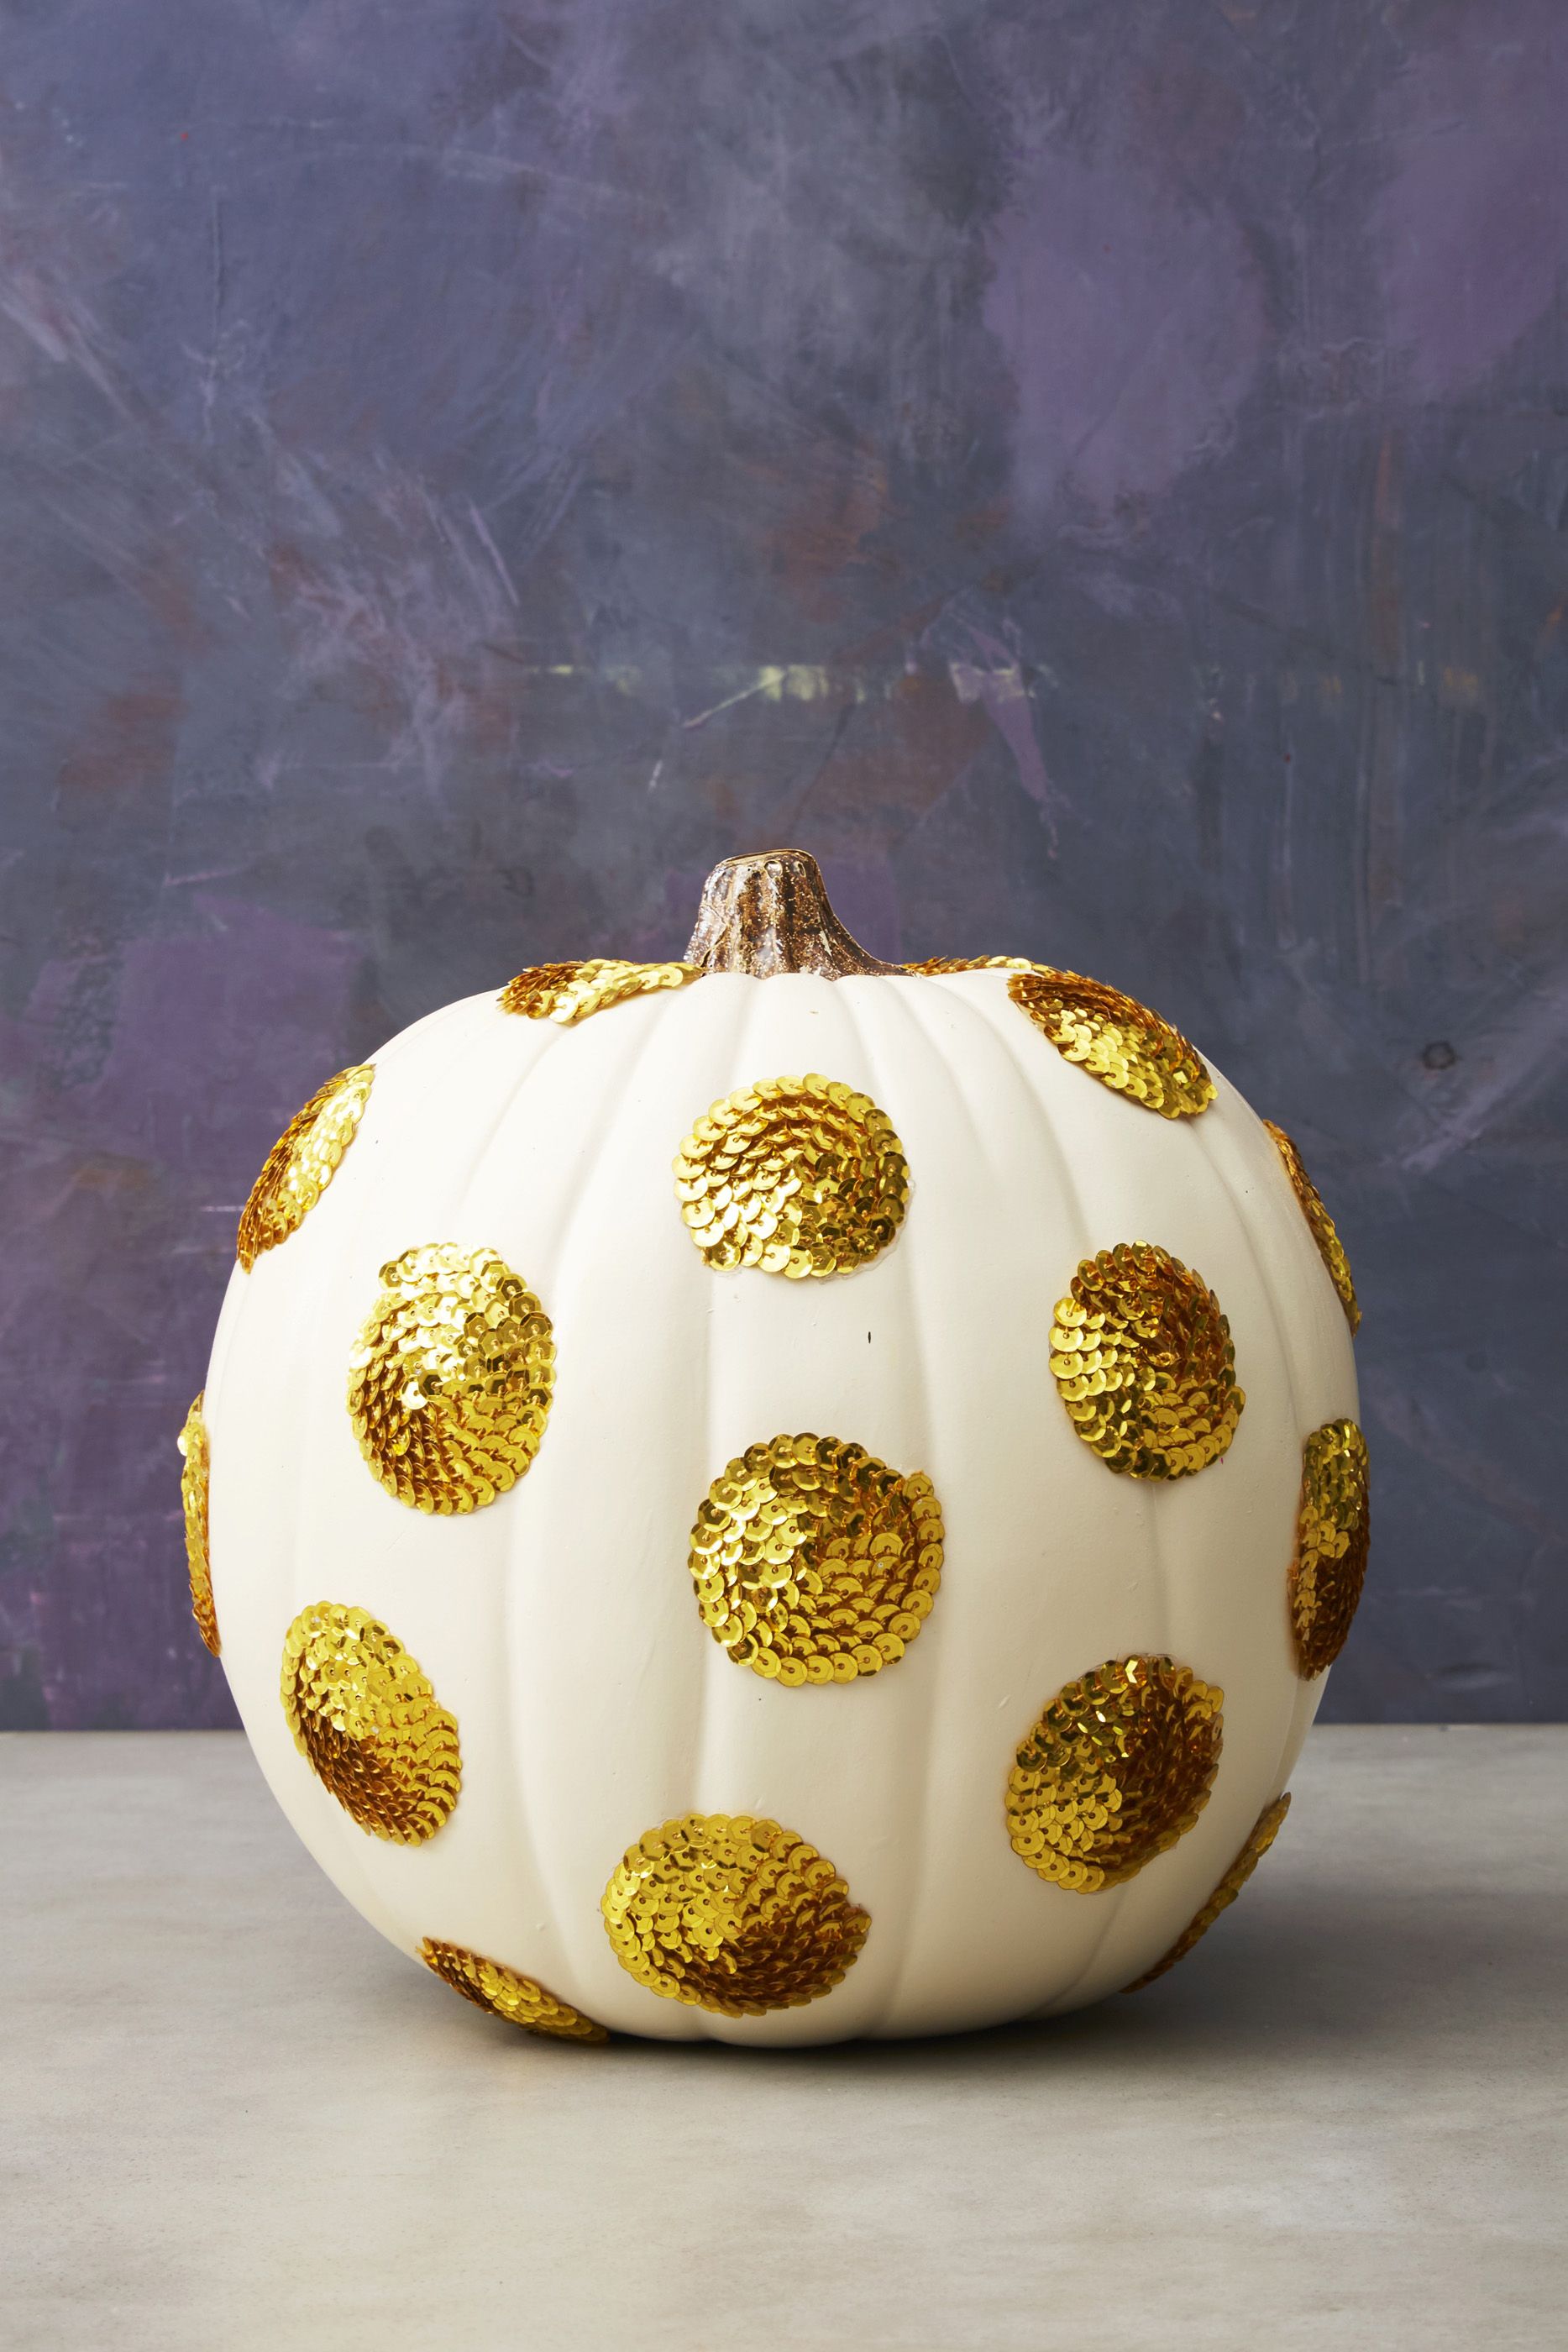 12 Best Pumpkin Painting Ideas - Painted Pumpkins for Halloween 12